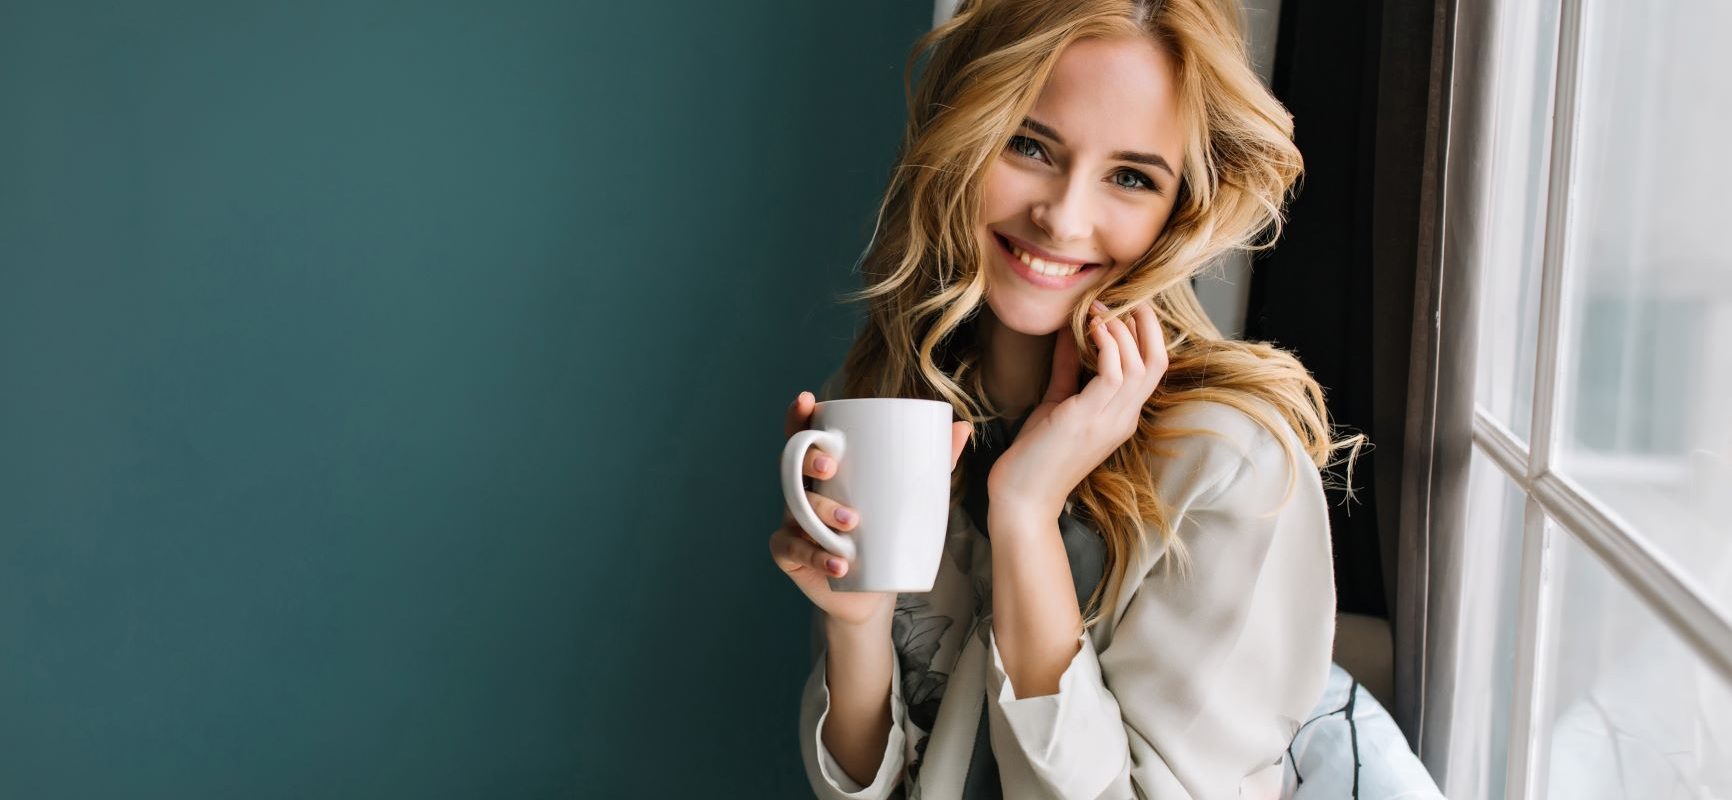 Sposoby na chandrę, czyli skąd czerpać energię do życia. Uśmiechnięta kobieta w blond włosach i piżamie pije poranną kawę, siedząc na parapecie.